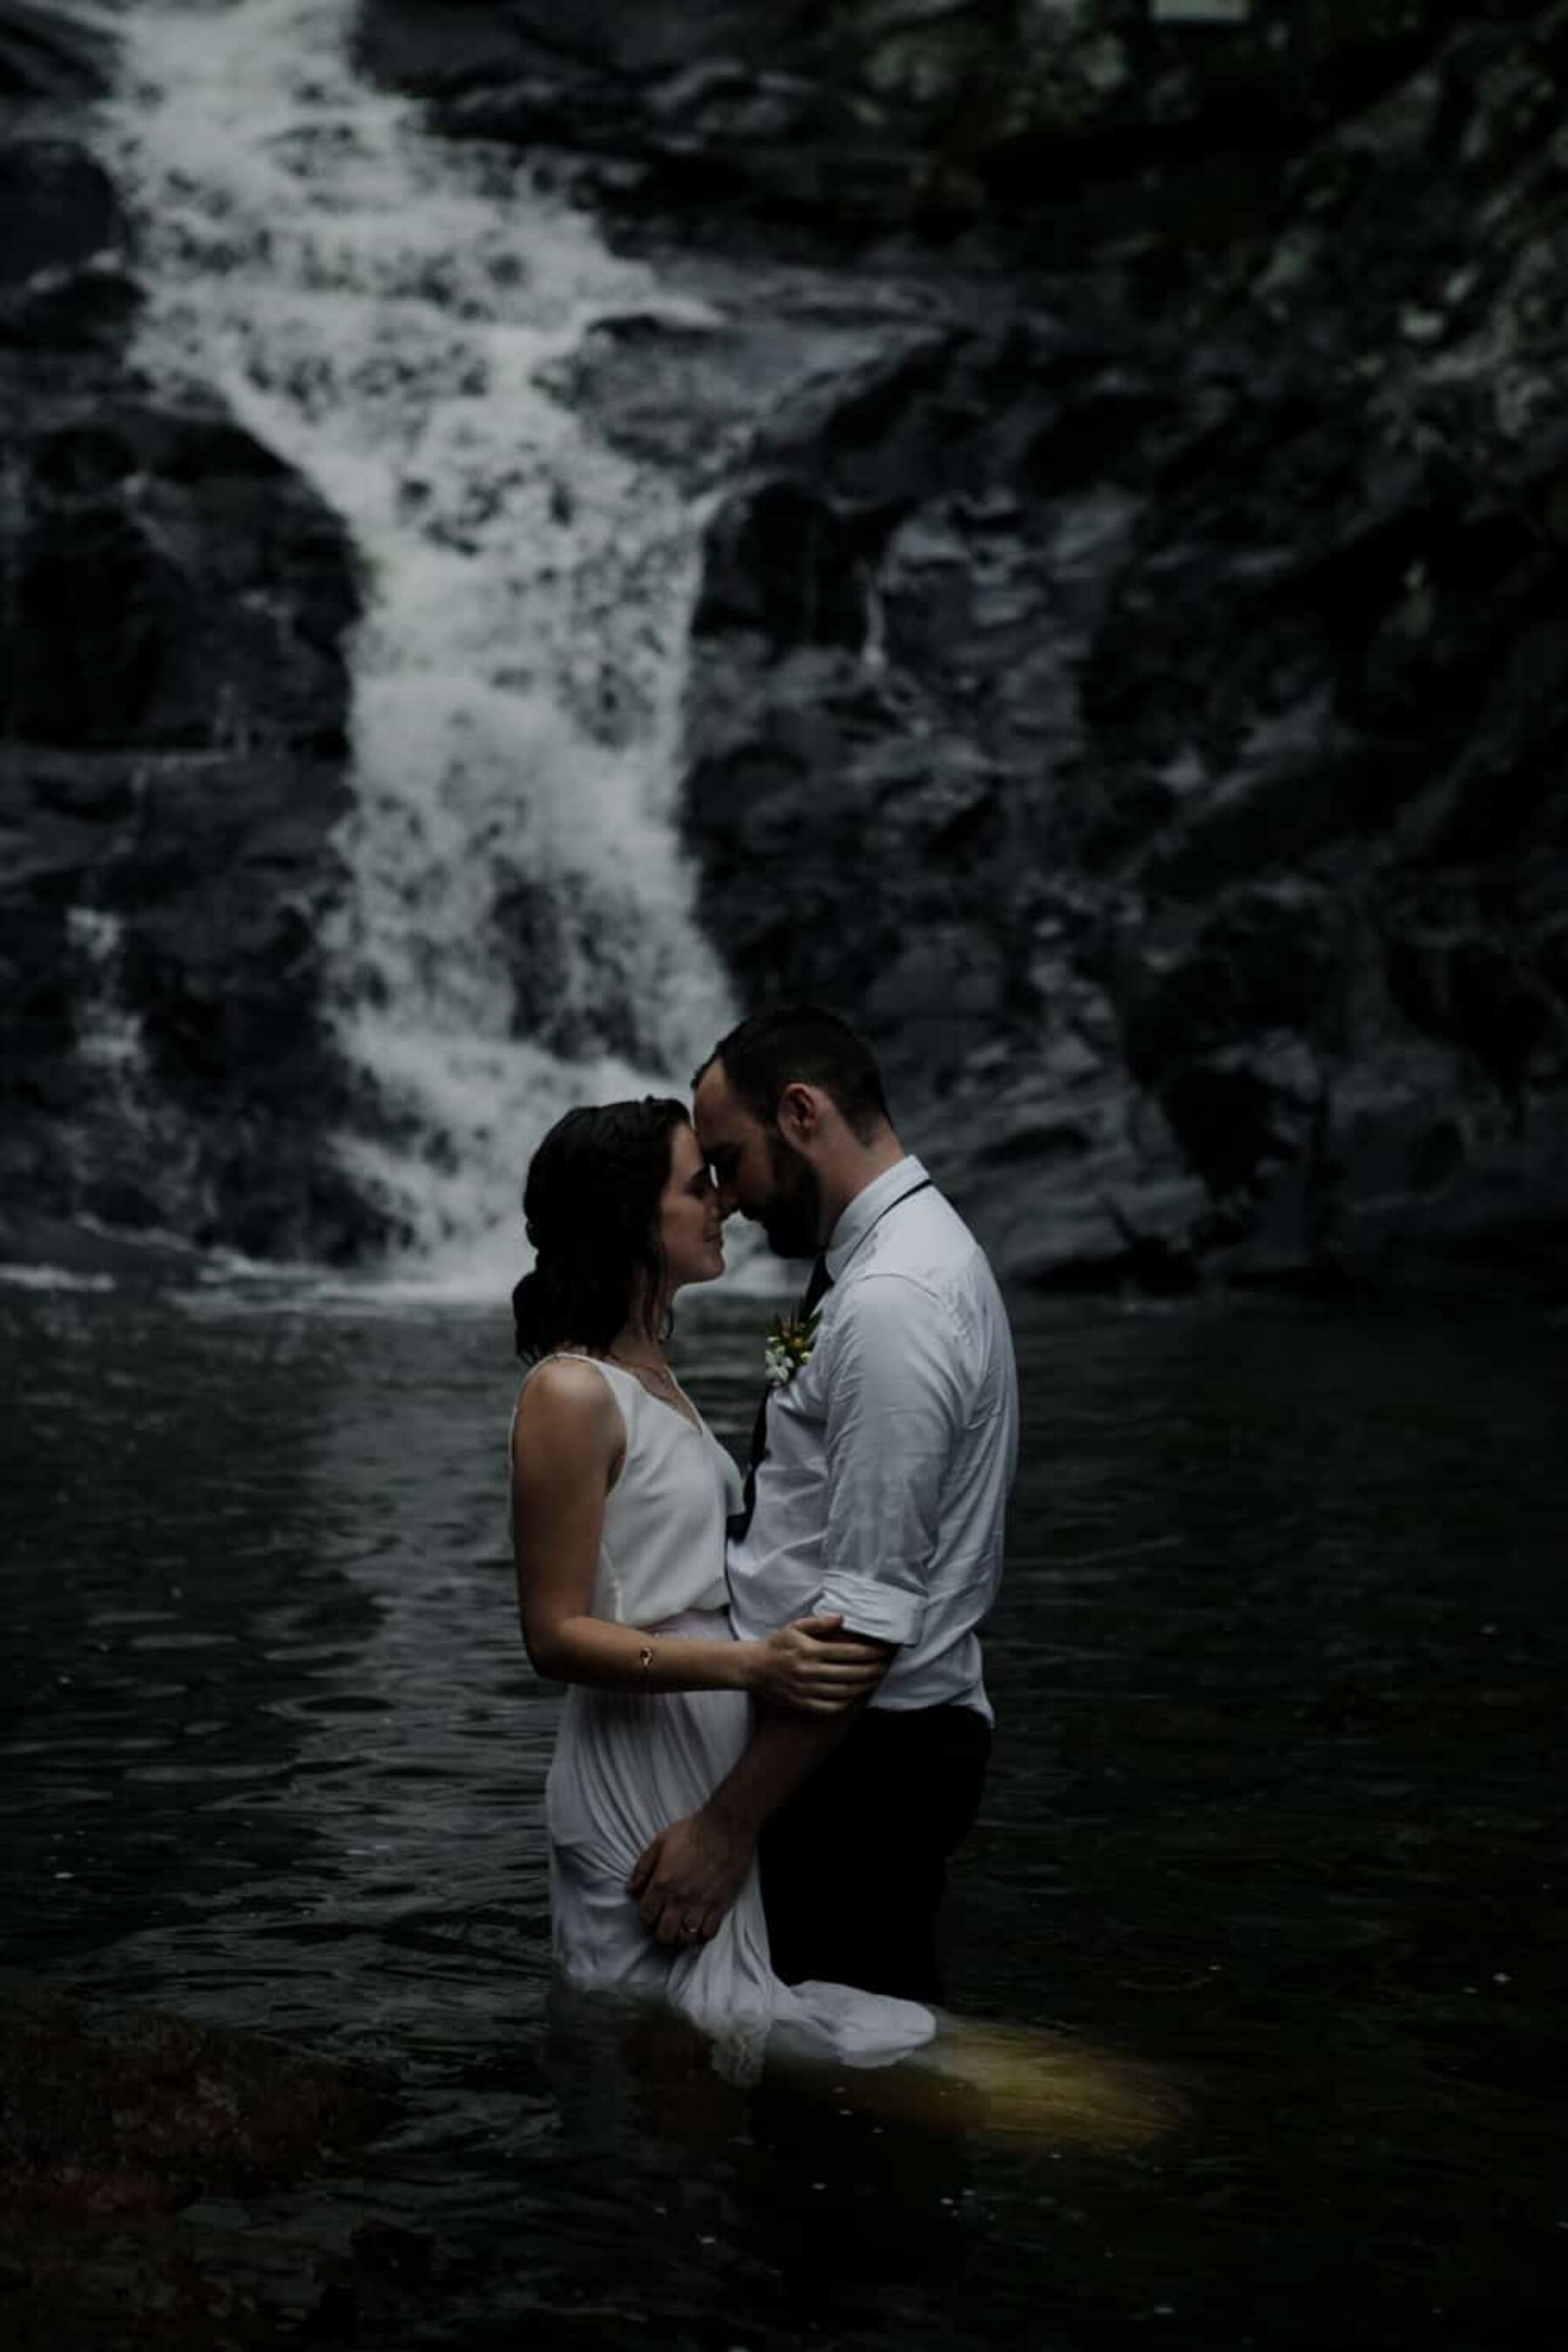 Tamborine Mountain elopement - photography by Aaron Shum